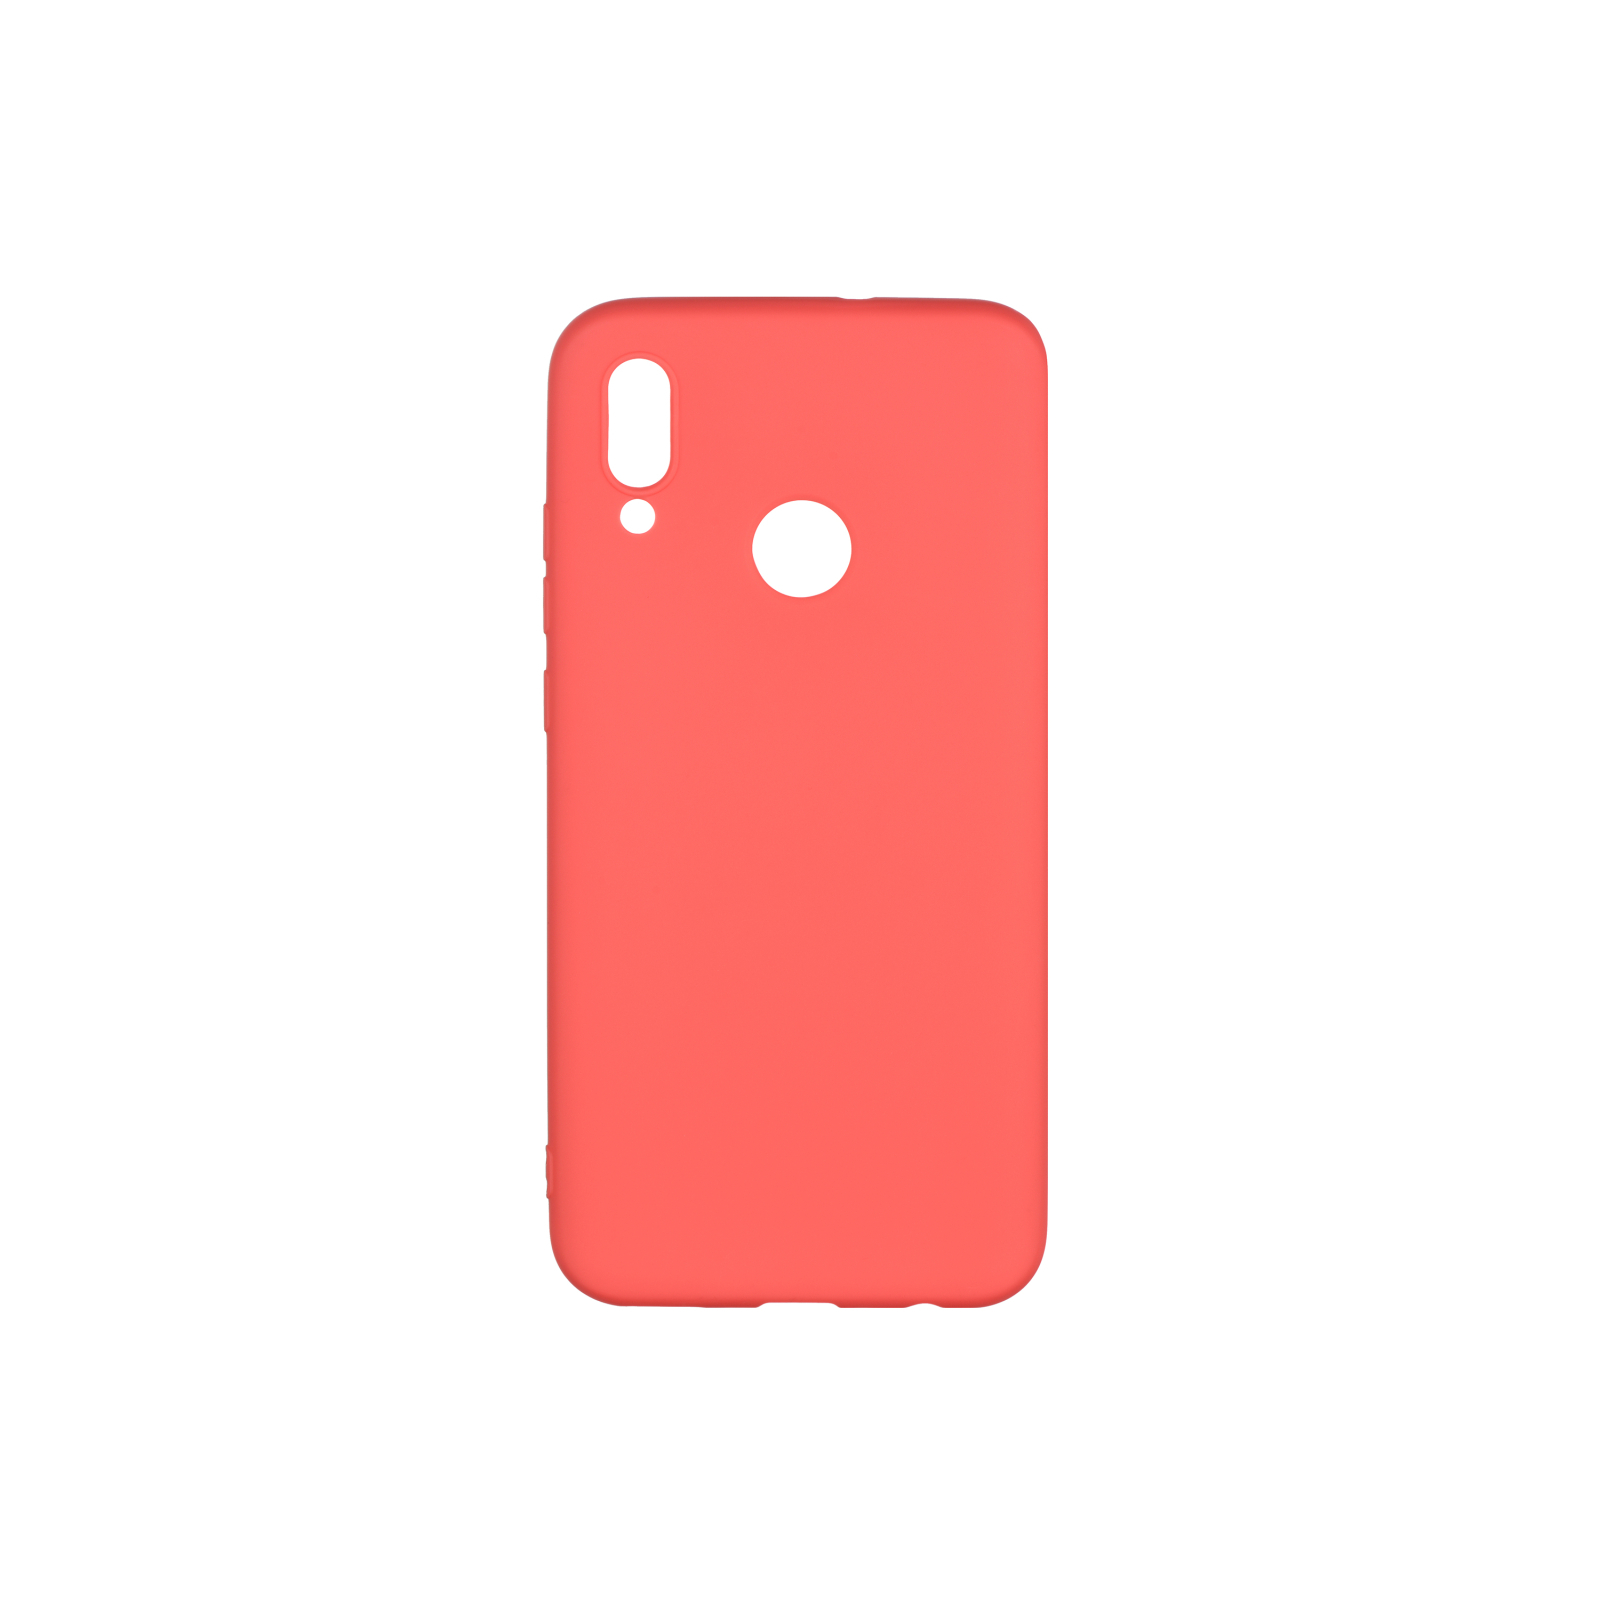 Чехол для мобильного телефона 2E Huawei P Smart 2019, Soft touch, Peach (2E-H-PS-19-AOST-PC)